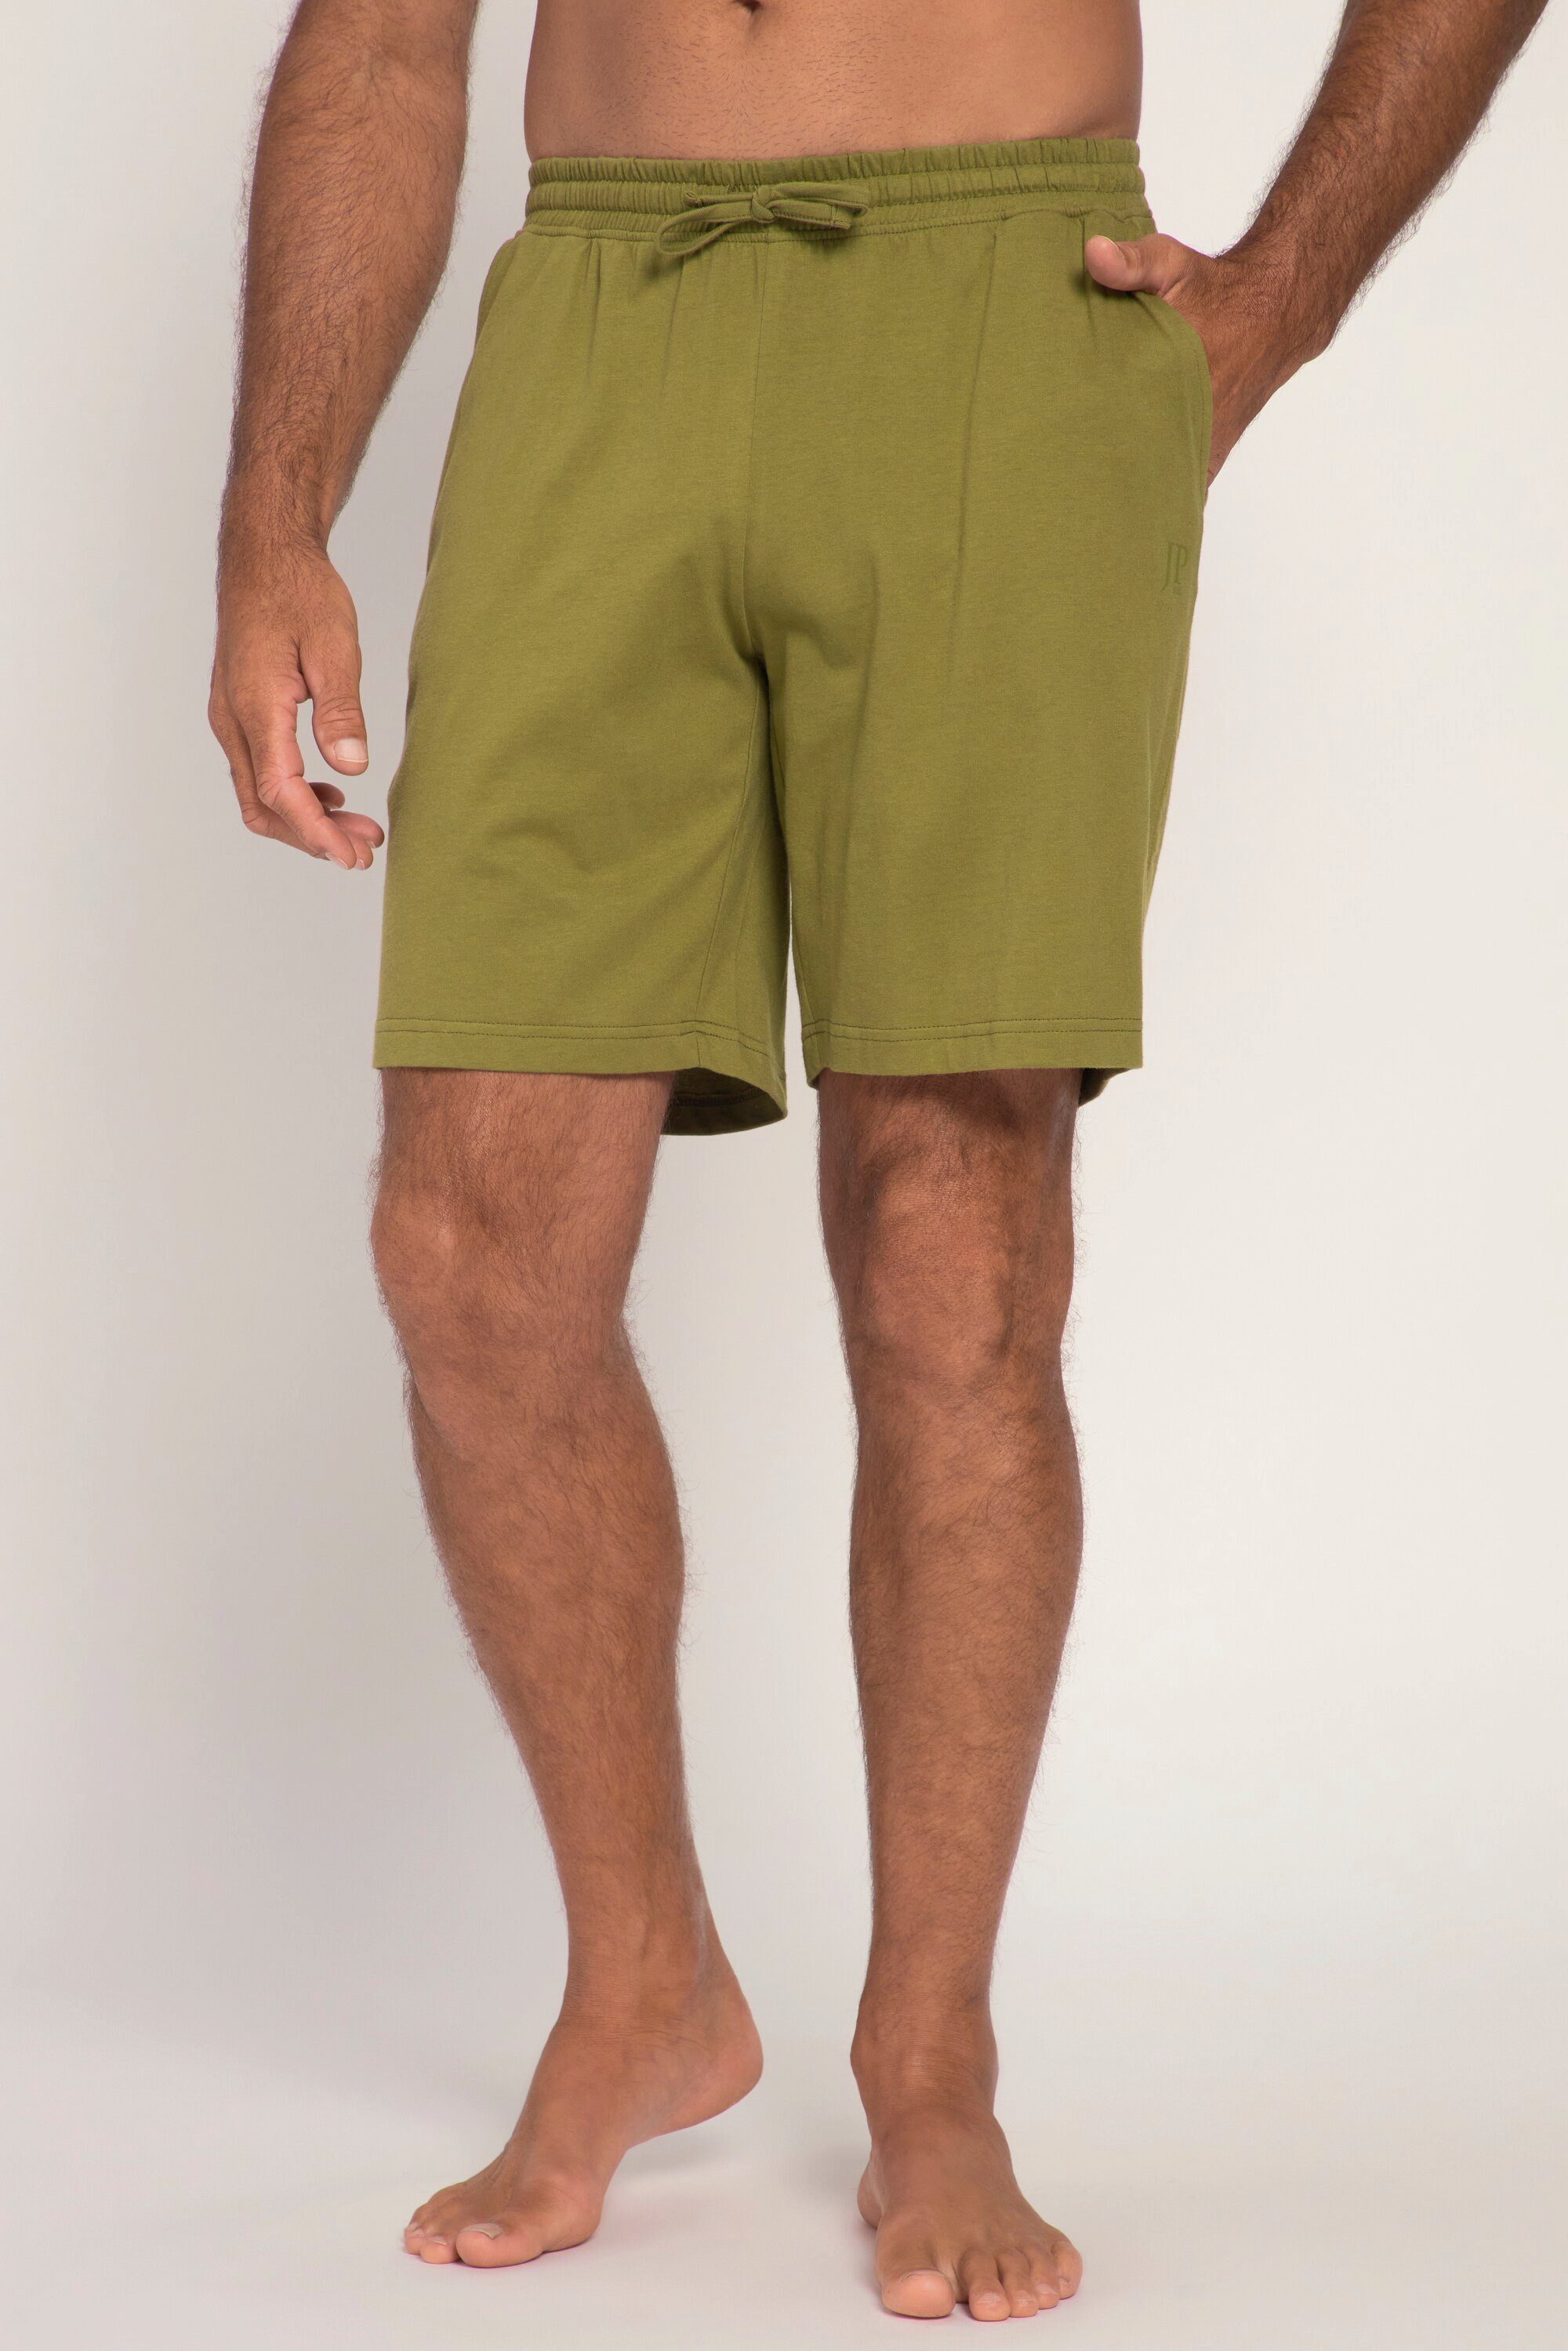 Elastikbund Schlafanzug olive Schlafanzug Homewear JP1880 Hose Shorts